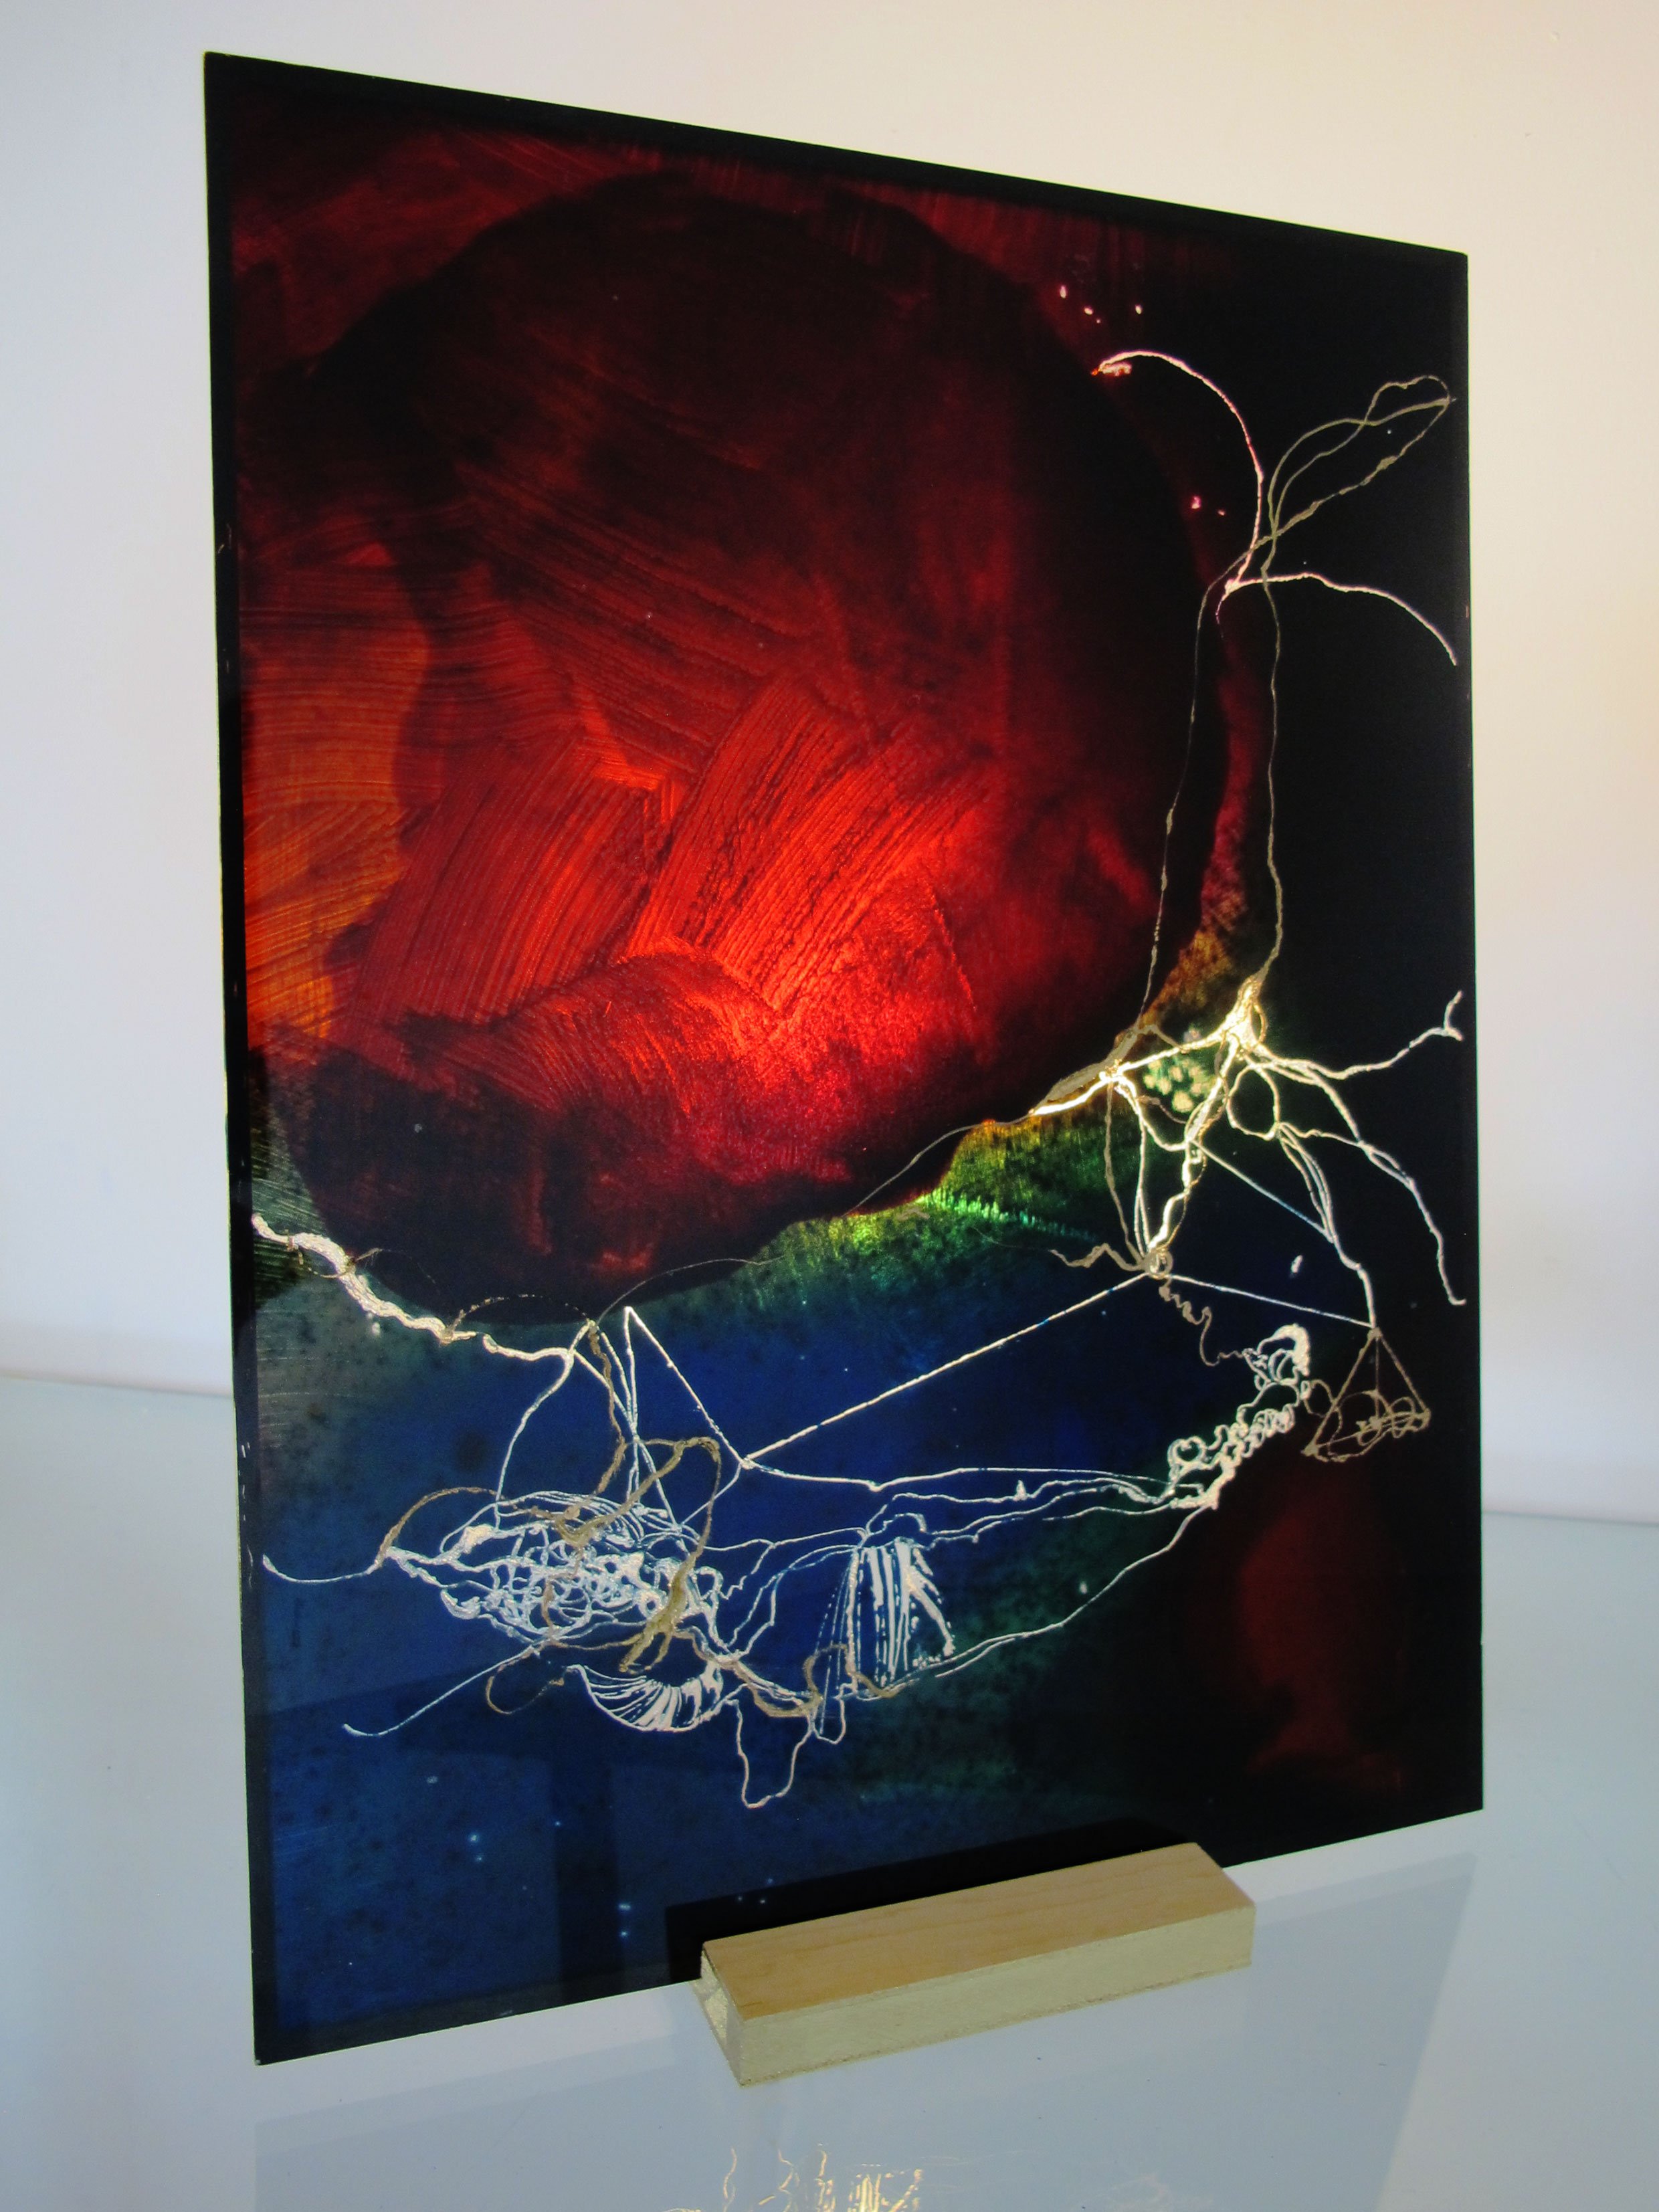  PLASMA V (2022) Peinture et techniques mixtes sur plexiglas sur socle bois érable 38,5 x 28,5 cm 700 euros 